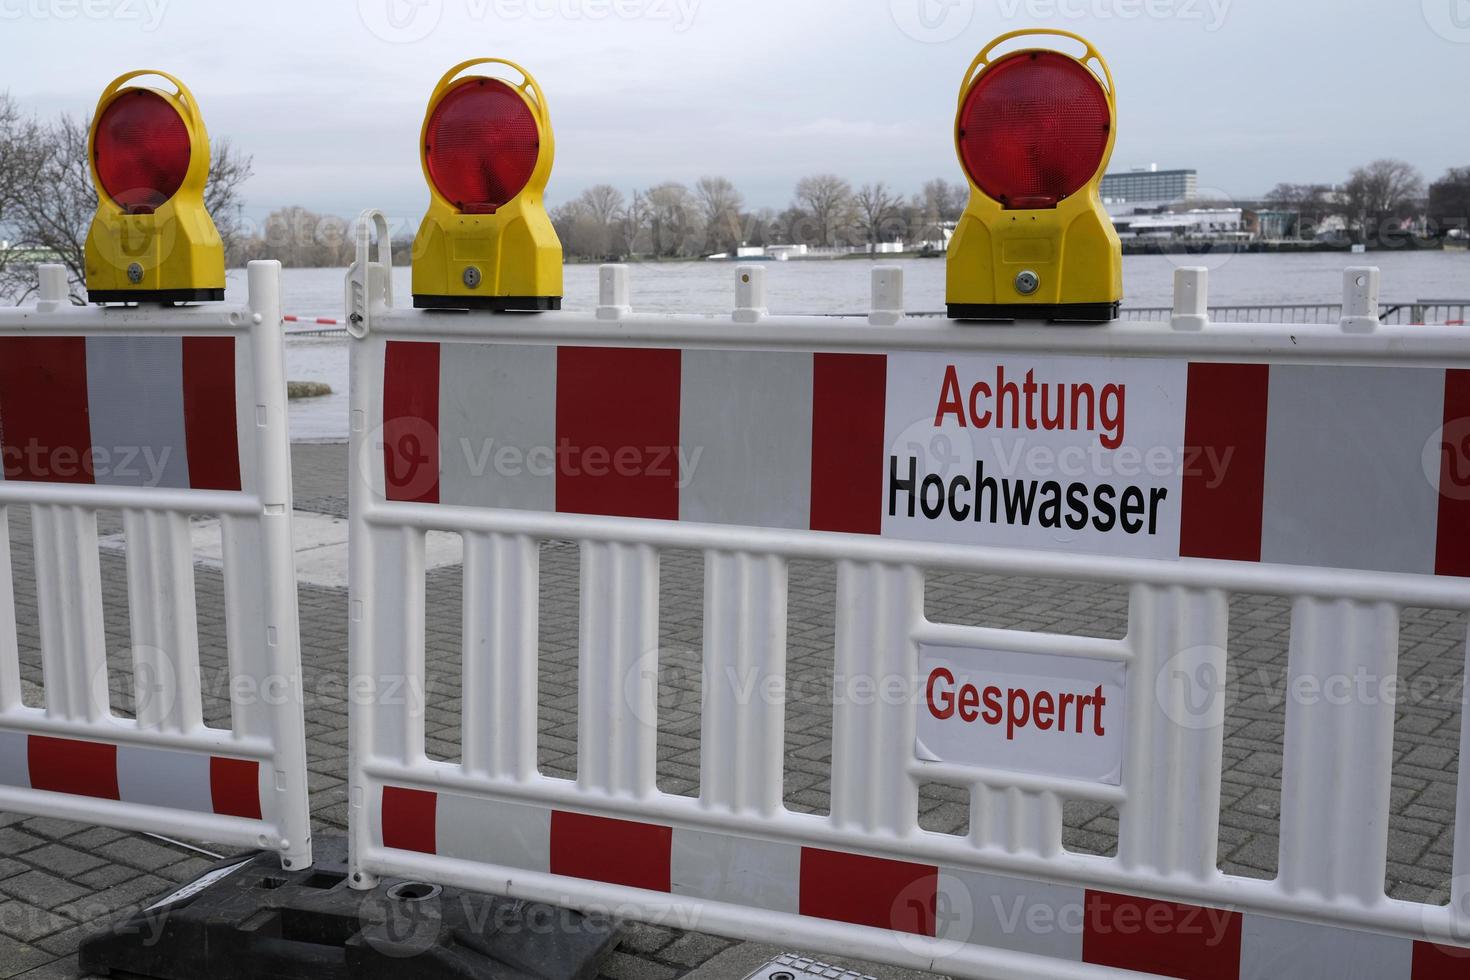 extrem väder - varning tecken i tysk på de ingång till en översvämmad fotgängare zon i Köln, Tyskland foto